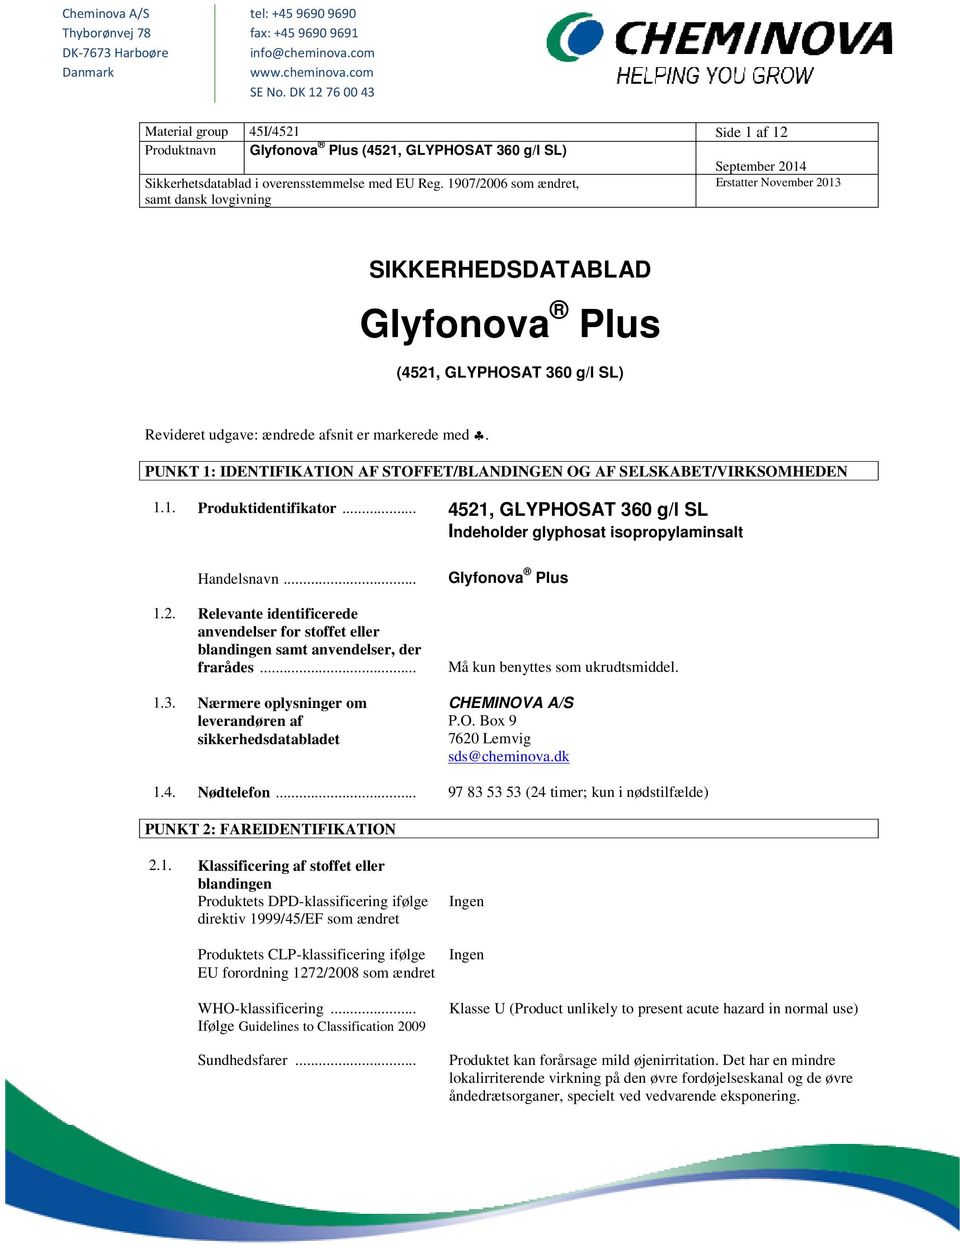 1907/2006 som ændret, Erstatter November 2013 samt dansk lovgivning SIKKERHEDSDATABLAD Glyfonova Plus (4521, GLYPHOSAT 360 g/l SL) Revideret udgave: ændrede afsnit er markerede med.